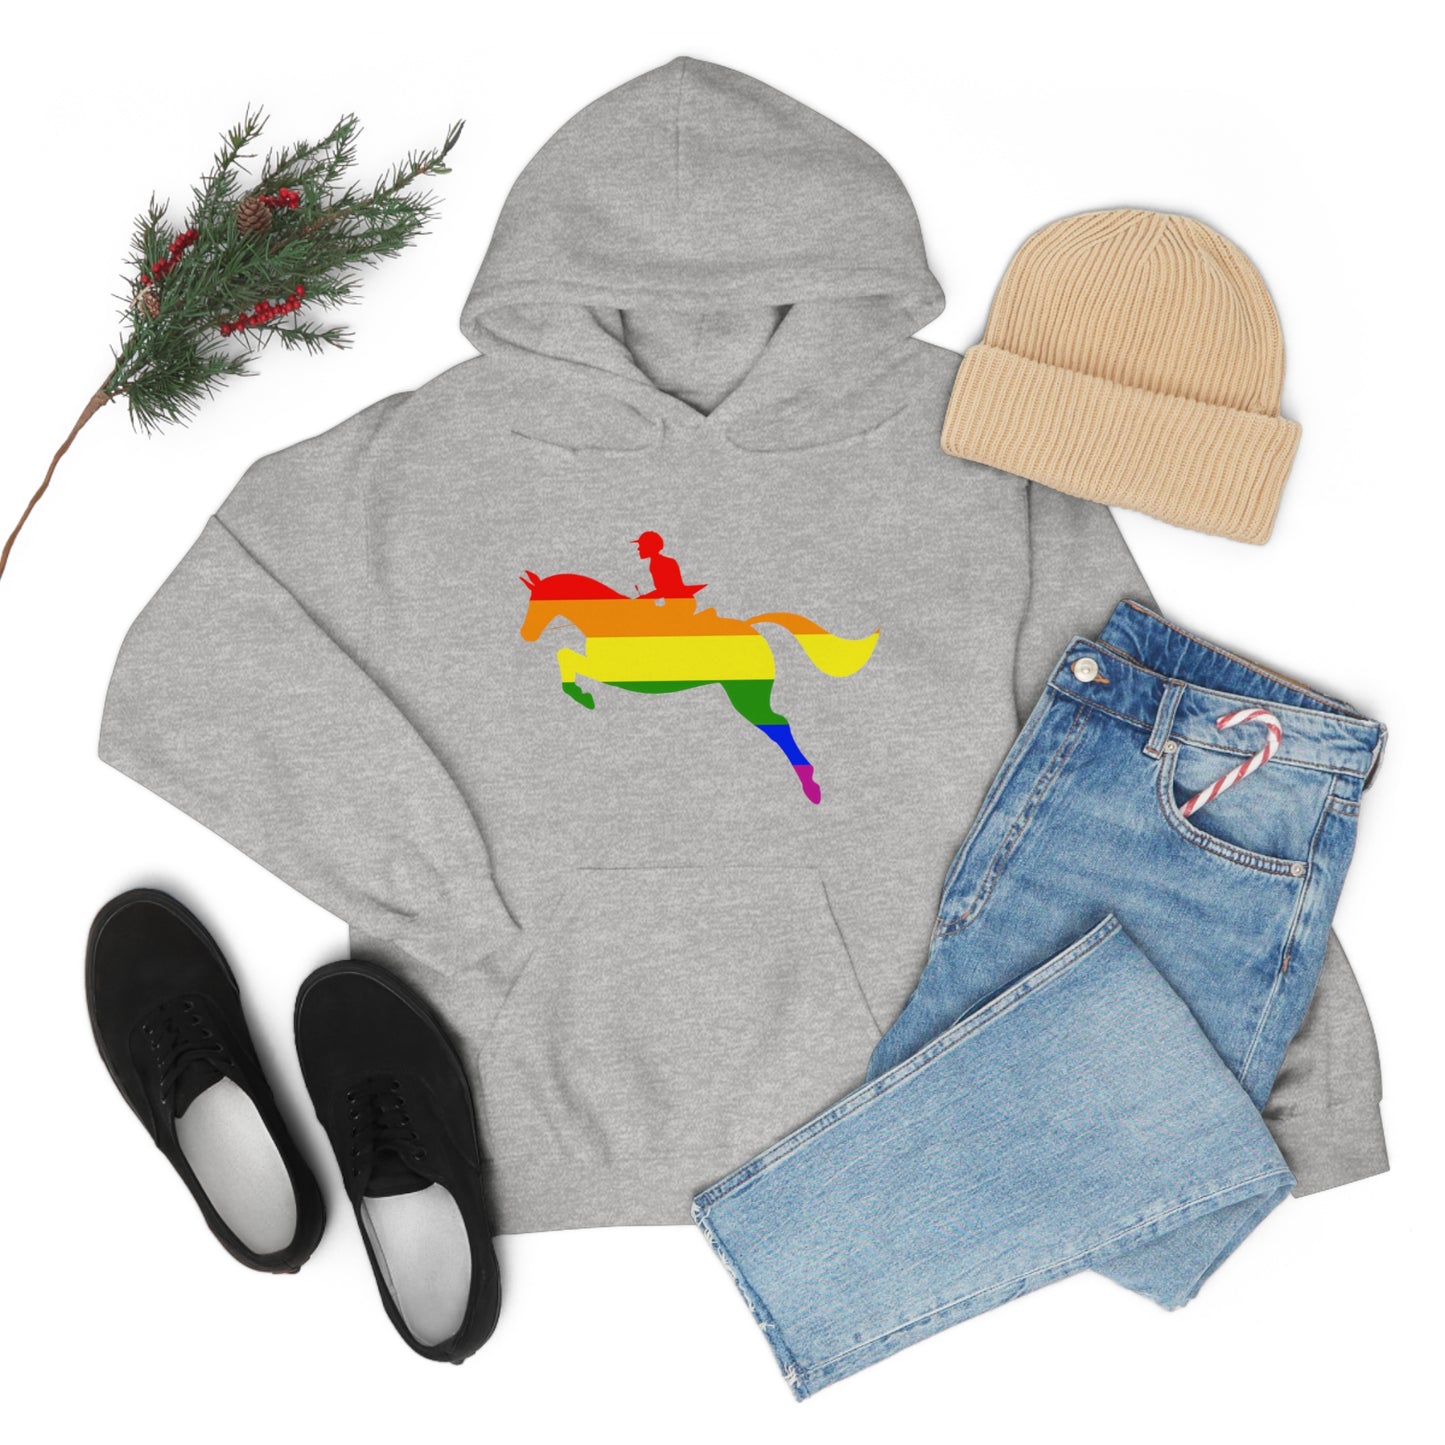 PRIDE, LOVE, and HORSES Hooded Sweatshirt